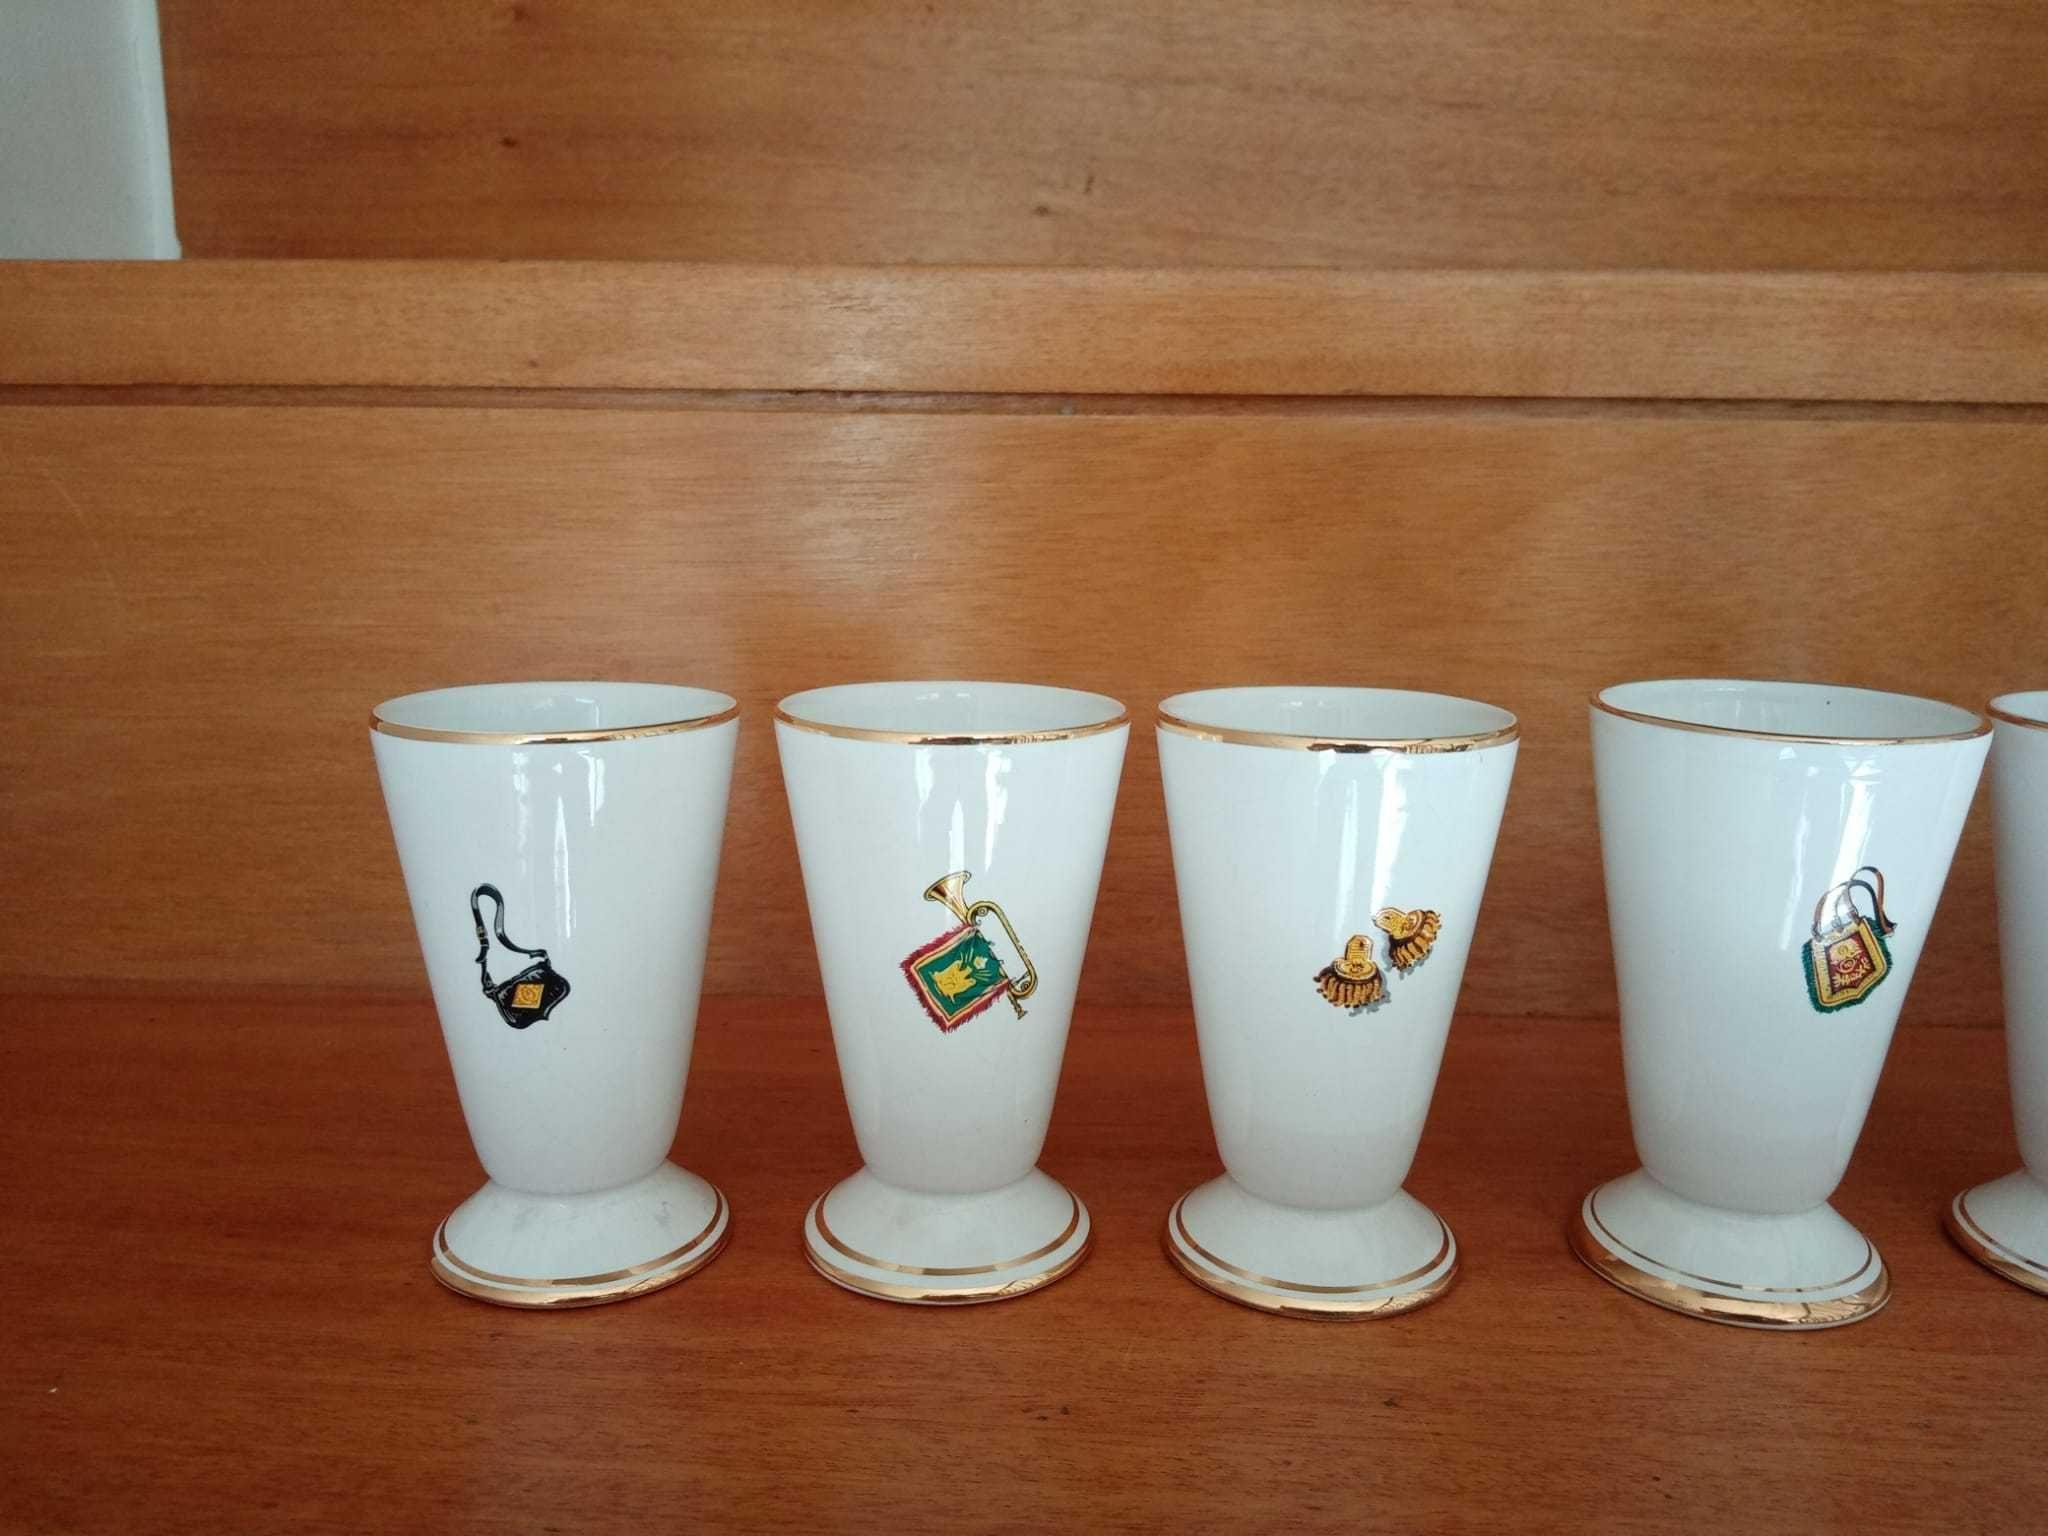 Garrafa de Licor vintage com 6 copos, da marca Louçarte (anos 60)